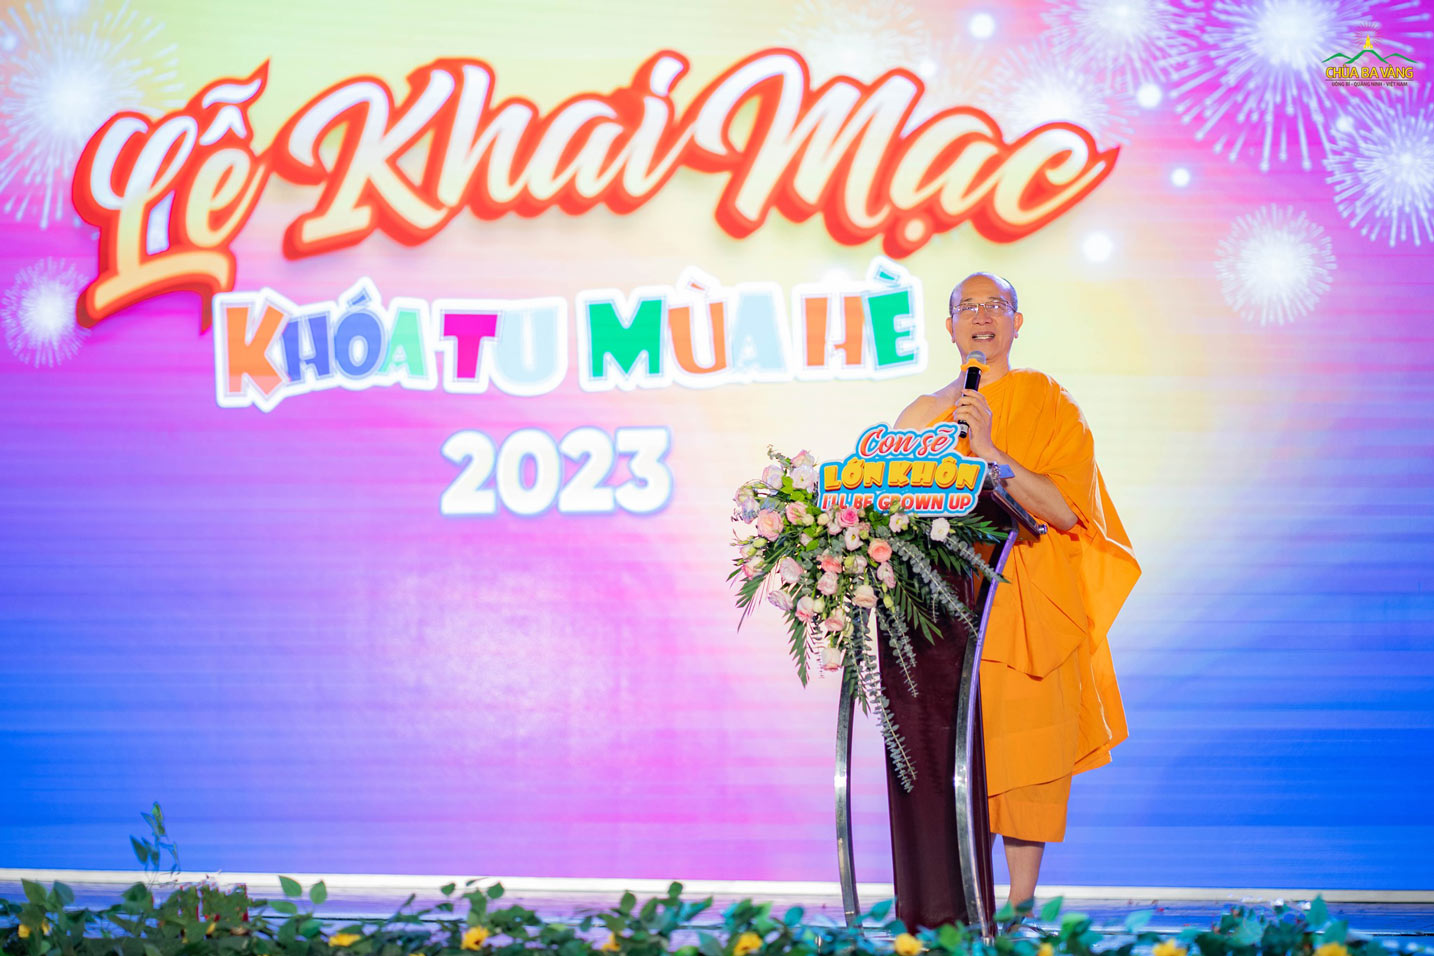 Sư Phụ Thích Trúc Thái Minh phát biểu trong lễ khai mạc khóa tu mùa hè 2023